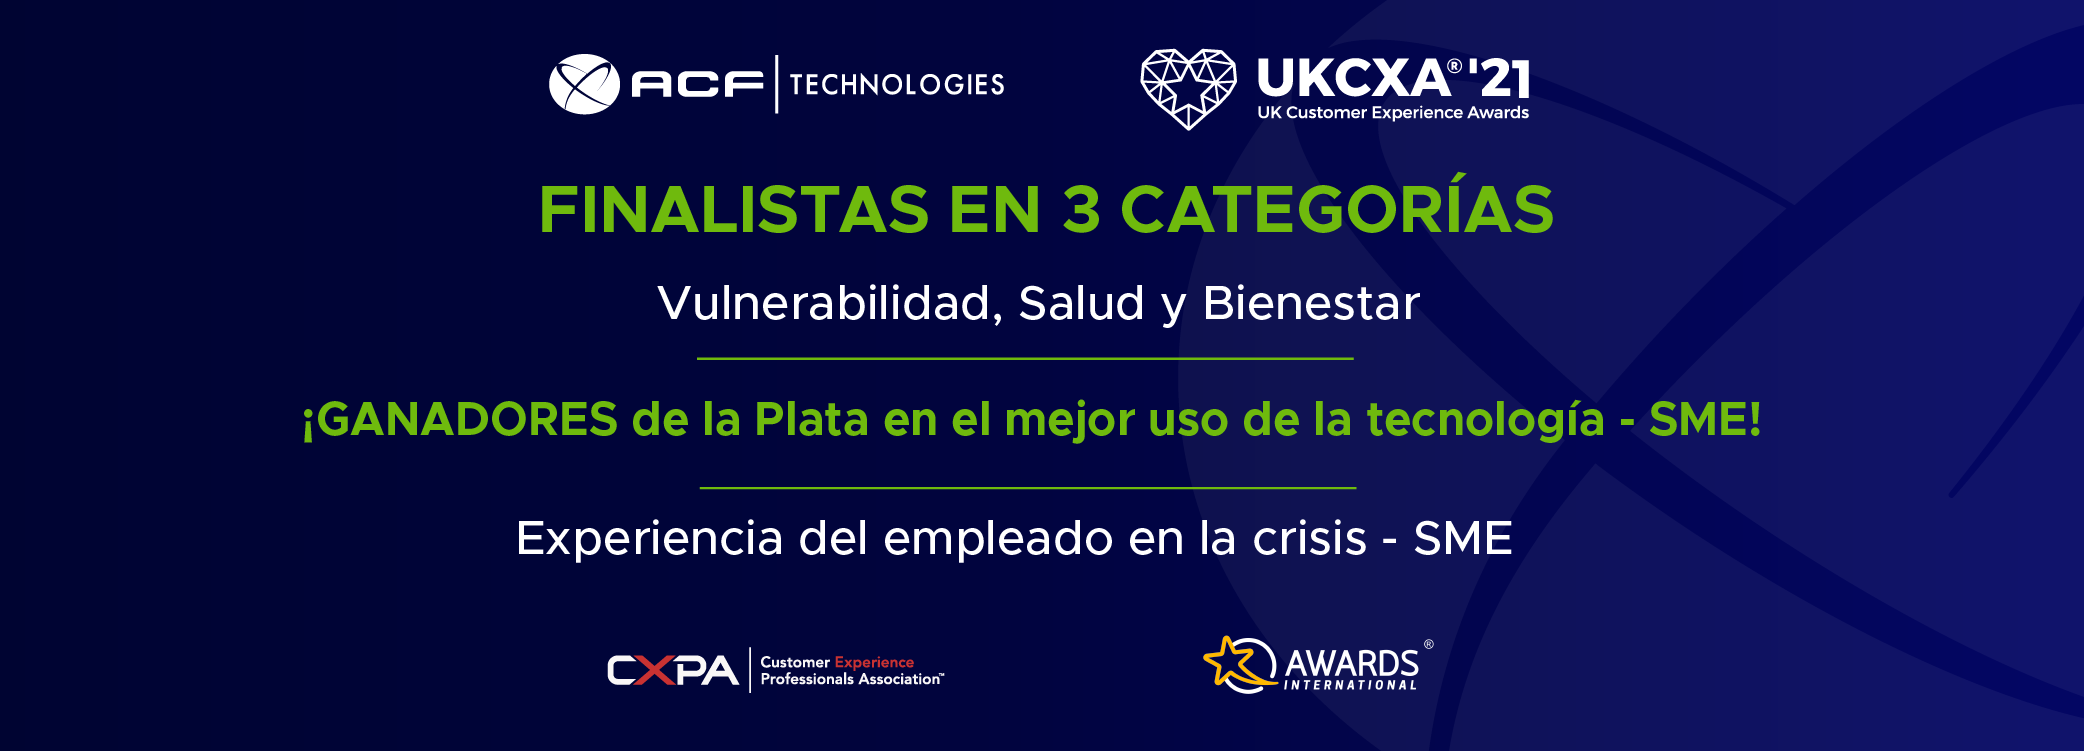 ACF seleccionada como ganadora del premio de Plata en la categoría de mejor uso de la tecnología